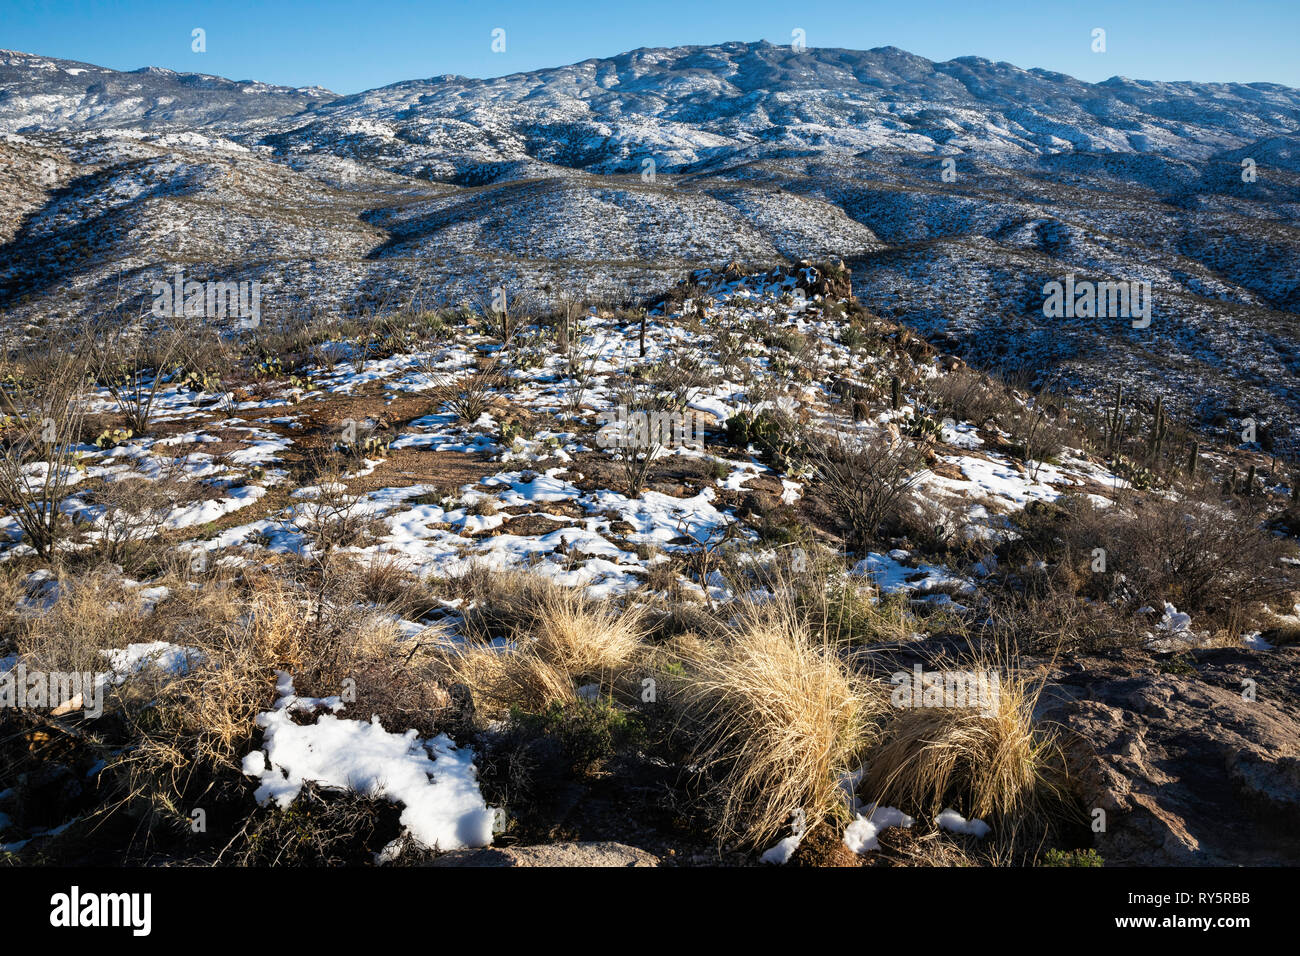 Rincon Mountains with fresh snow and golden grass, Redington Pass, Tucson, Arizona Stock Photo